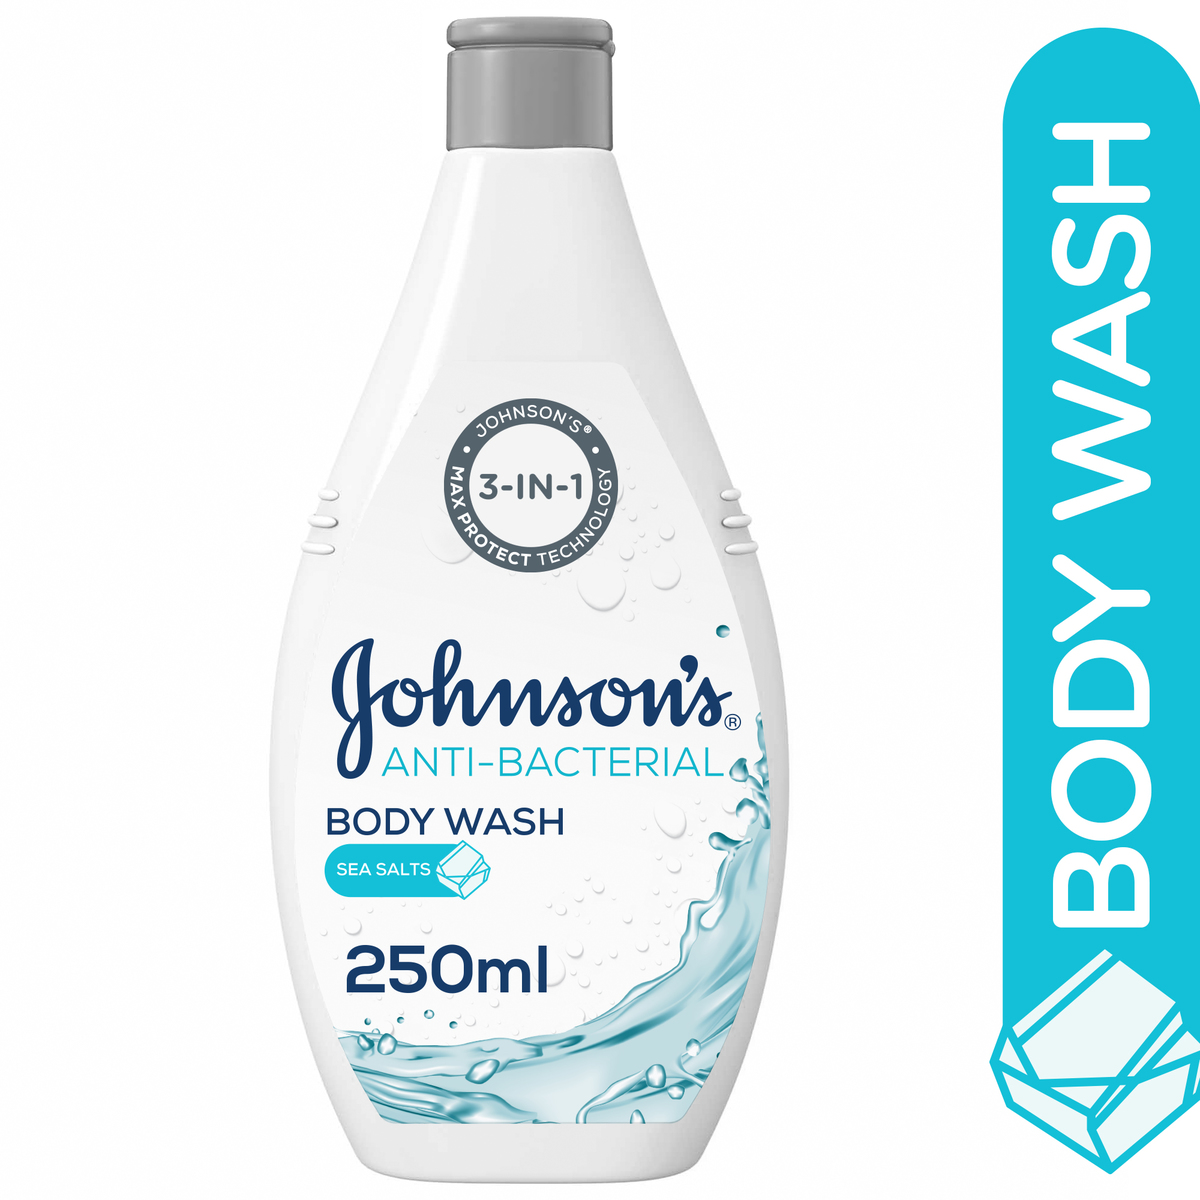 اشتري قم بشراء جونسون غسول الجسم المضاد للبكتيريا بأملاح البحر 250 مل Online at Best Price من الموقع - من لولو هايبر ماركت Shower Gel&Body Wash في الامارات